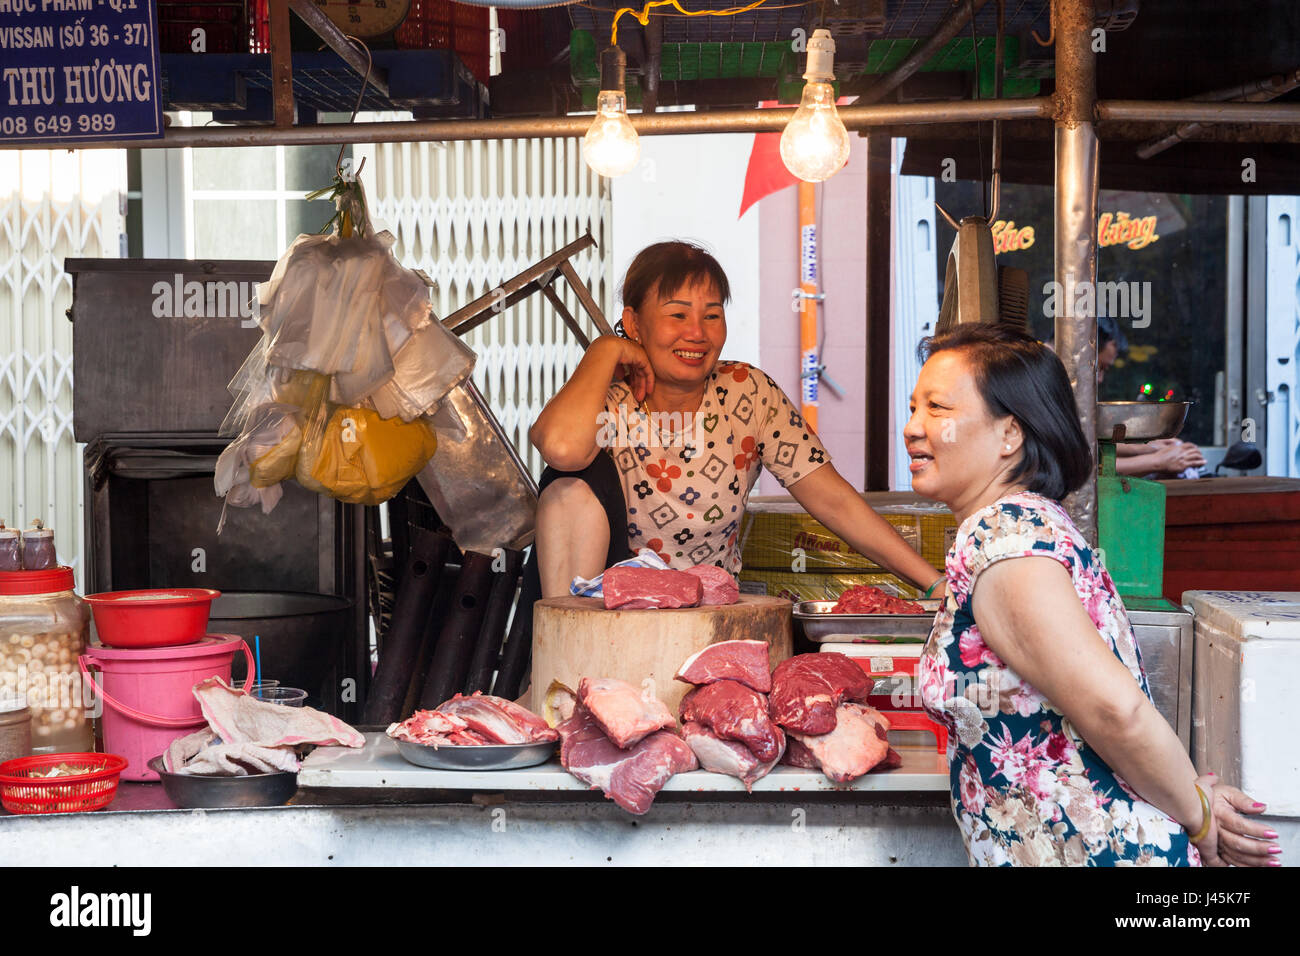 HO CHI MINH CITY, VIETNAM - Februar 07: zwei Frauen haben ein Gespräch auf dem nassen Markt am 7. Februar 2016 in Ho-Chi-Minh-Stadt, Vietnam. Stockfoto